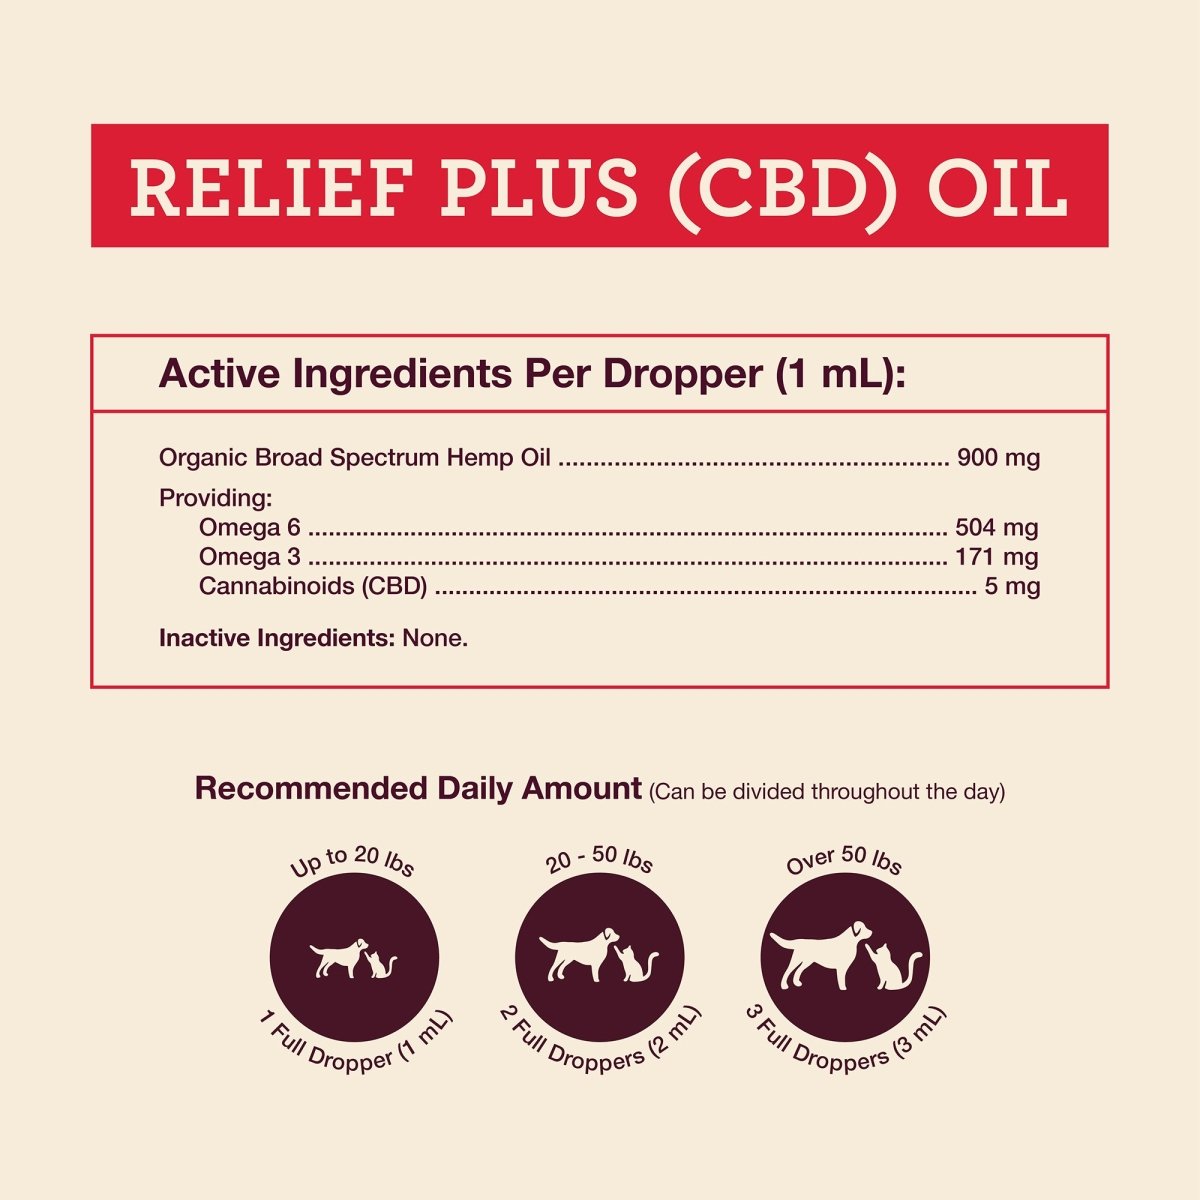 Relief Plus (CBD) Oil - Hemp Well cat cbd CBD CBD for dogs